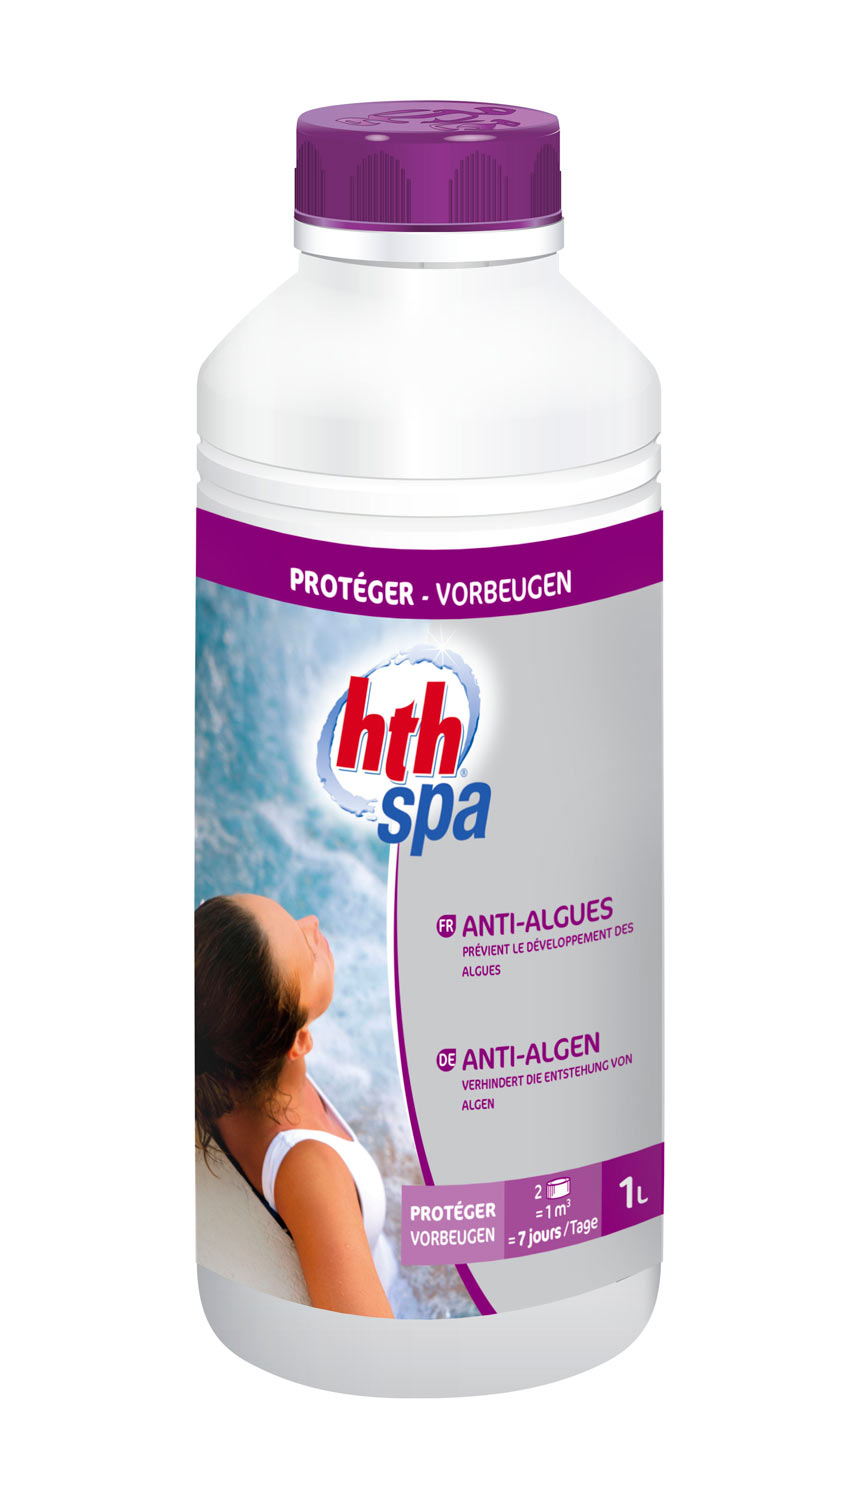 hth spa anti-algues